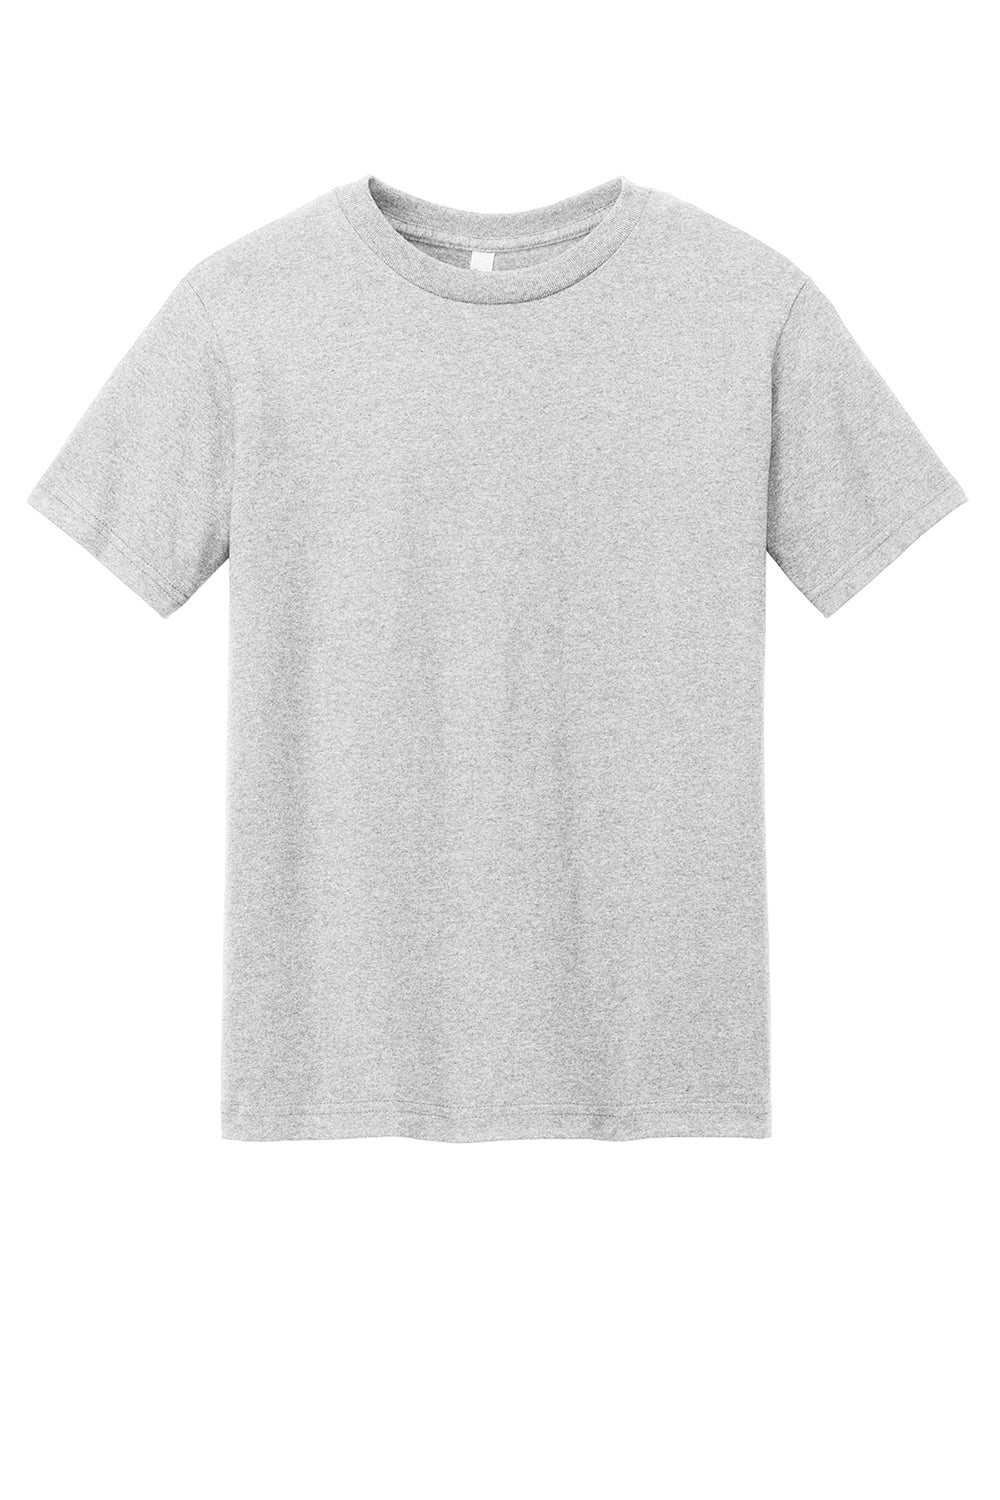 American Apparel 1301/AL1301 Mens Short Sleeve Crewneck T-Shirt Ash Grey Flat Front